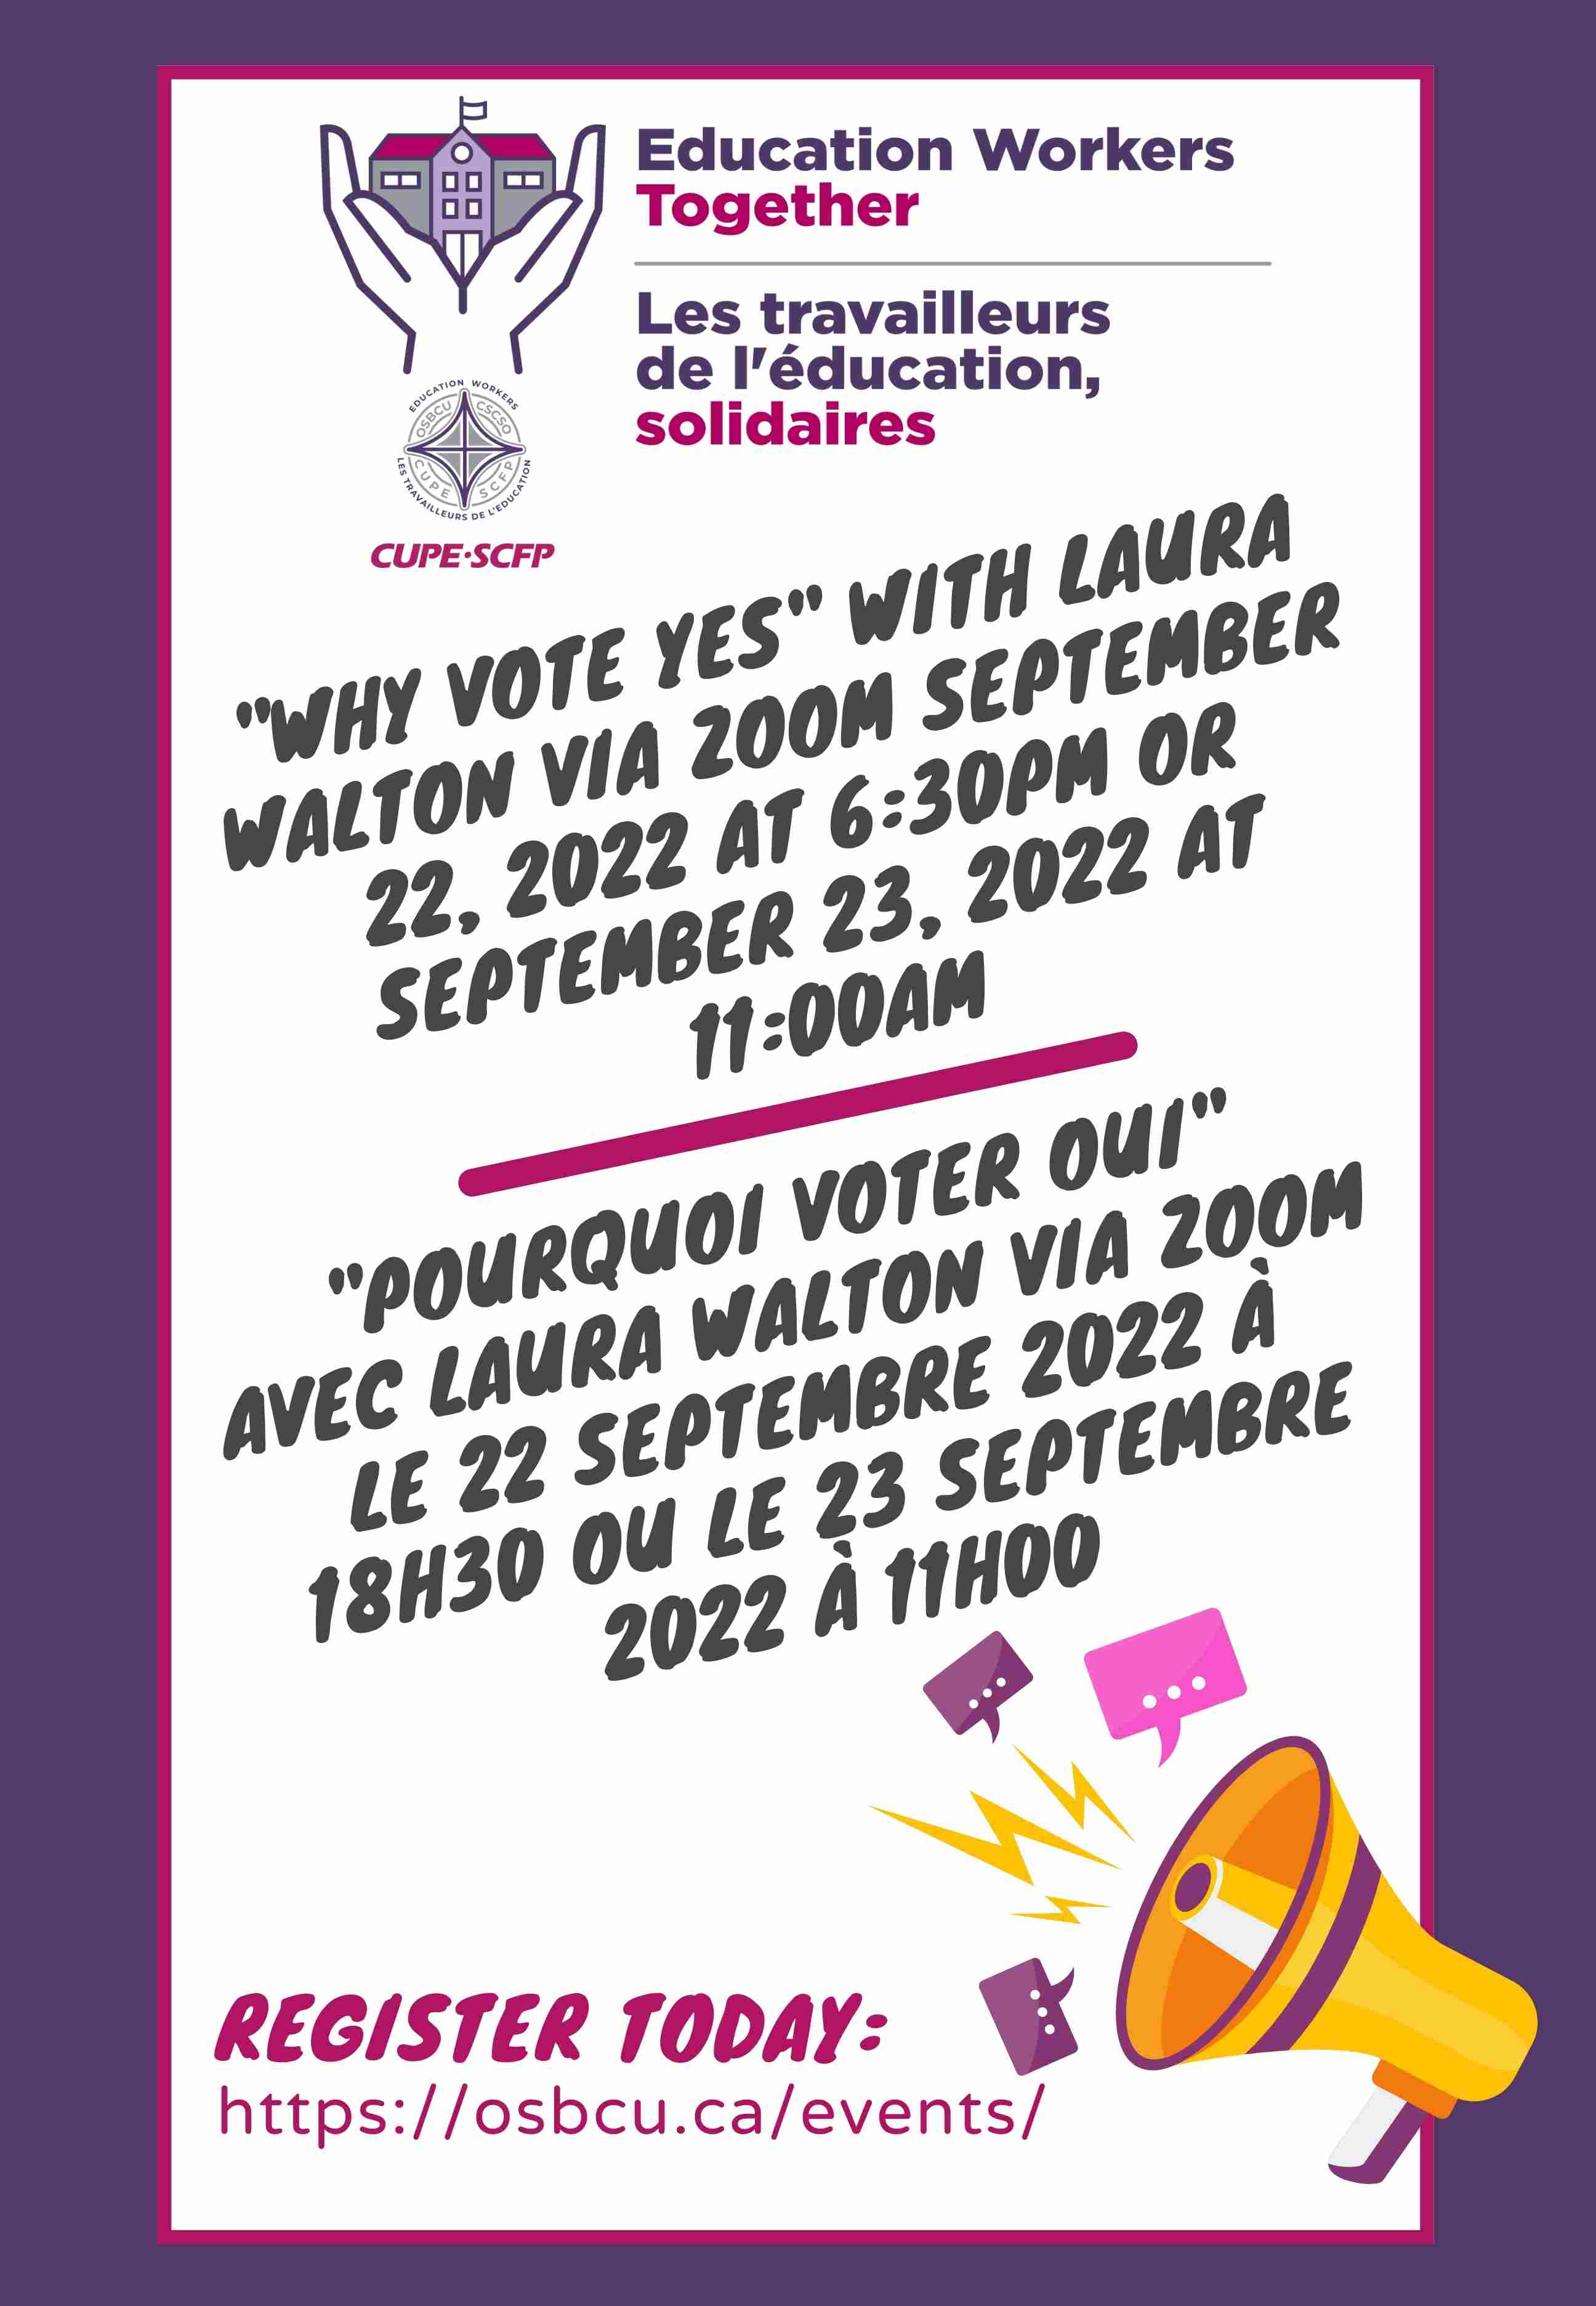 22 septembre 2022 "Pourquoi voter oui" avec Laura Walton